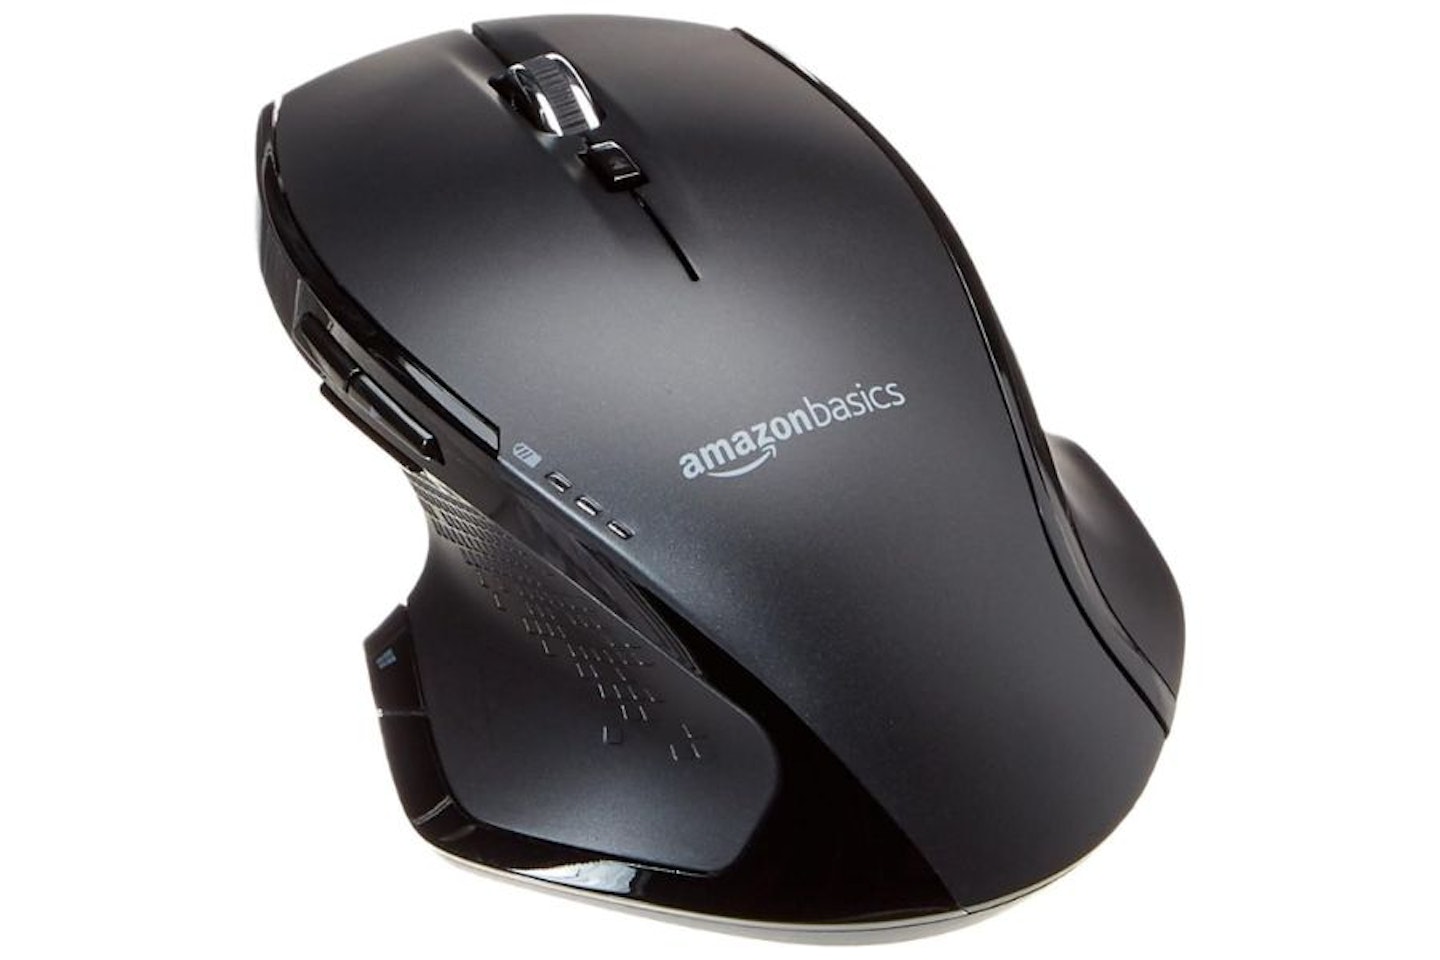 Amazon Basics Full-Size Ergonomic Wireless Mouse